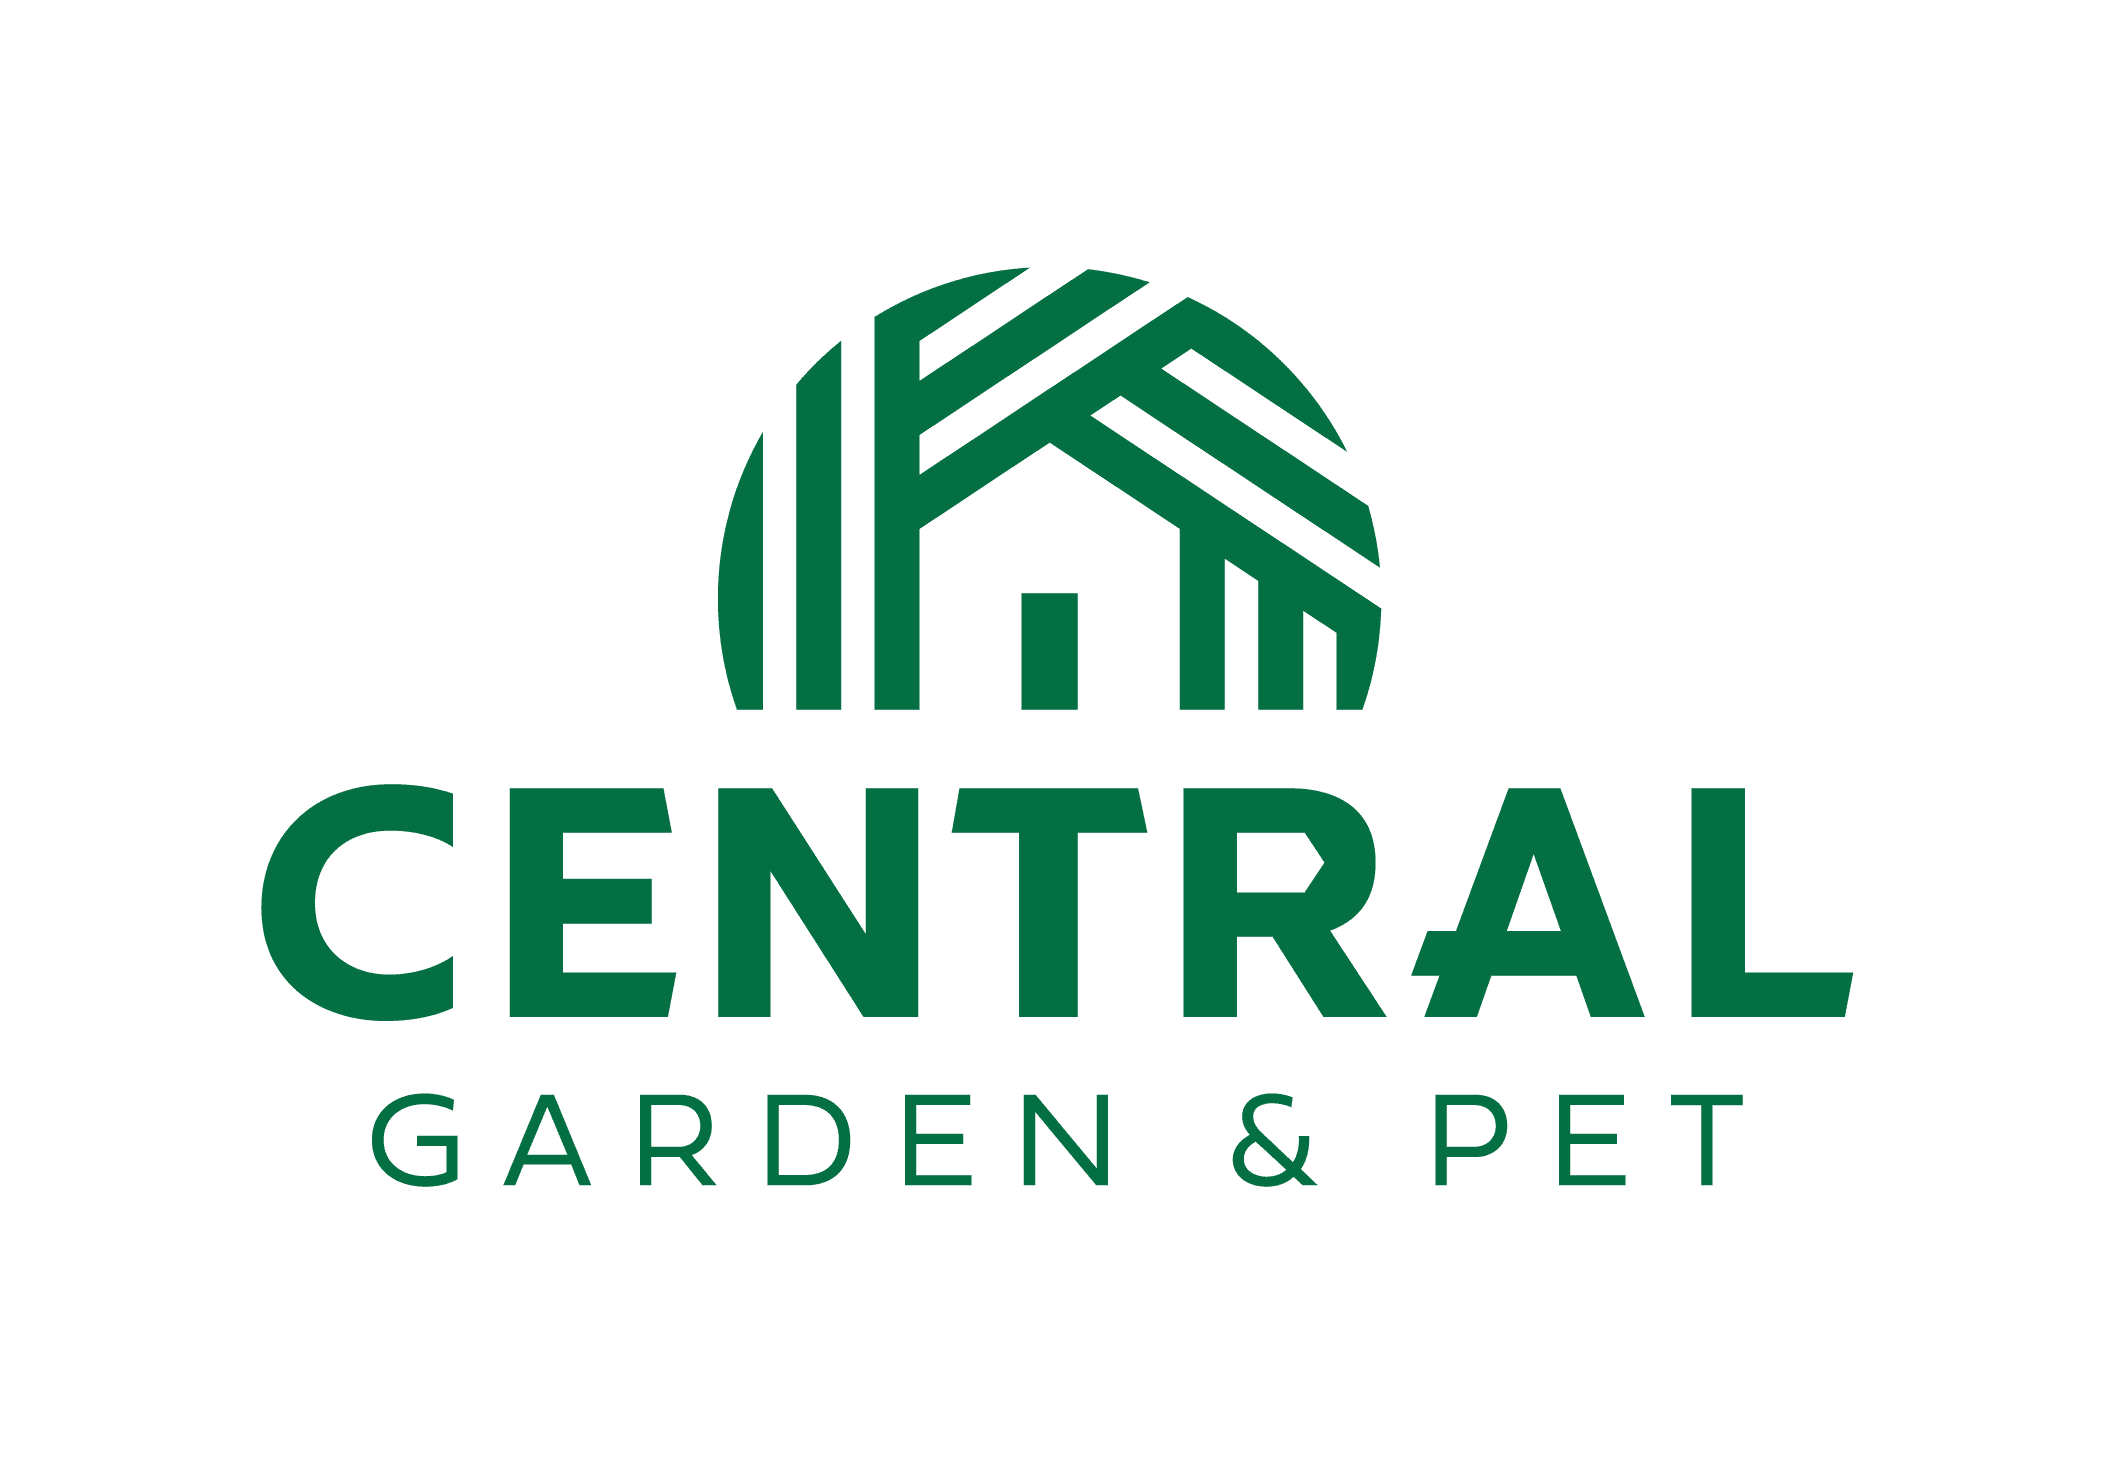 Central Garden & Pet Company